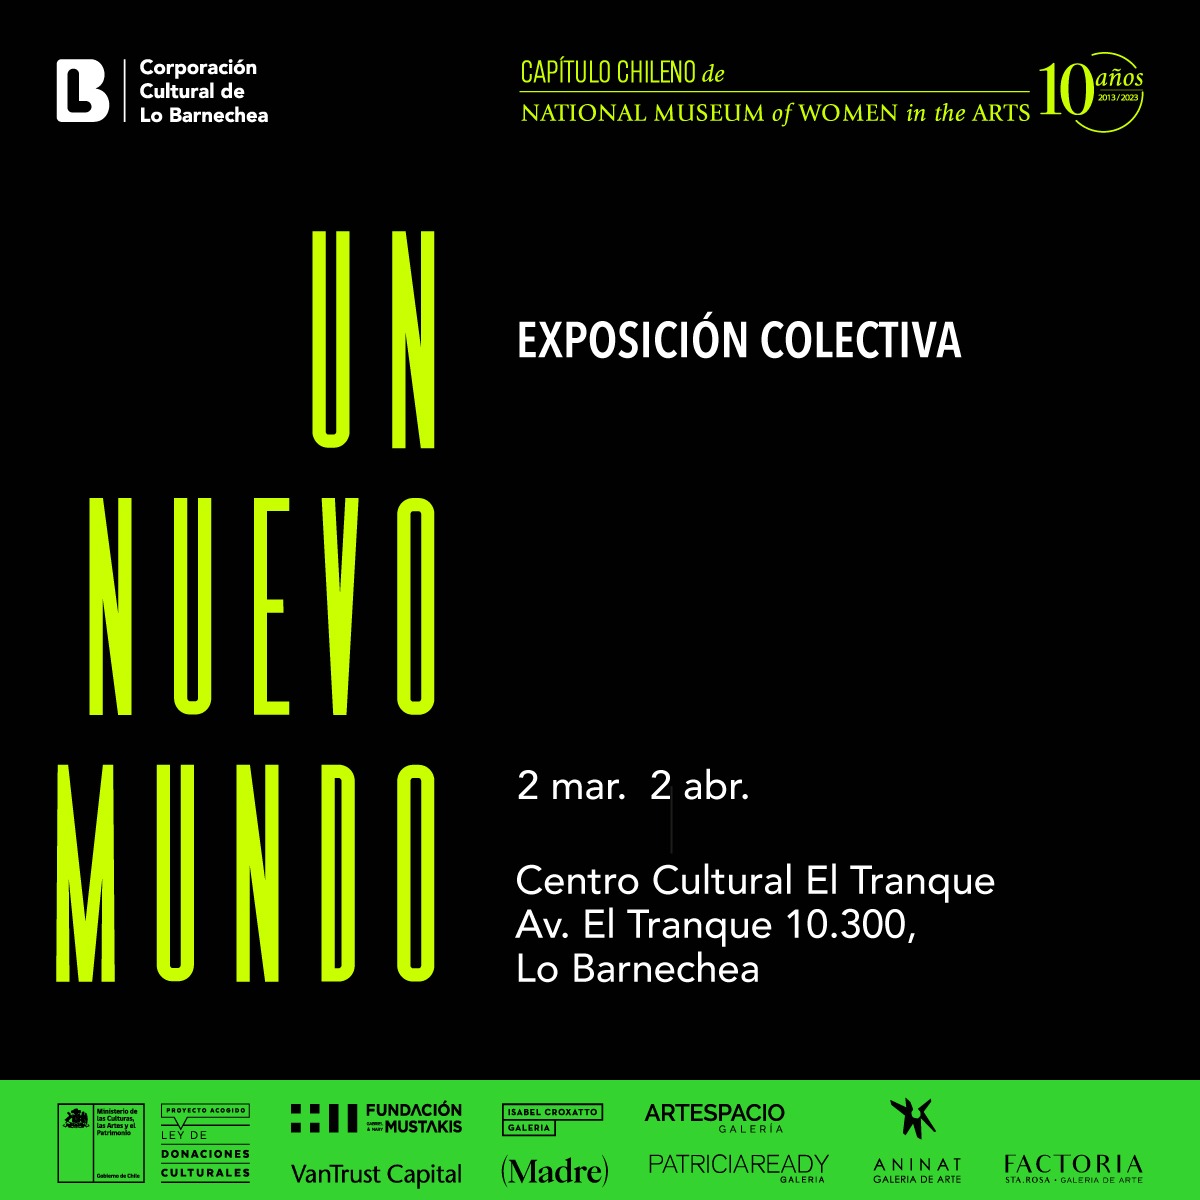 Corporación Cultural de Lo Barnechea inaugura exposición que visibiliza el trabajo de mujeres artistas chilenas